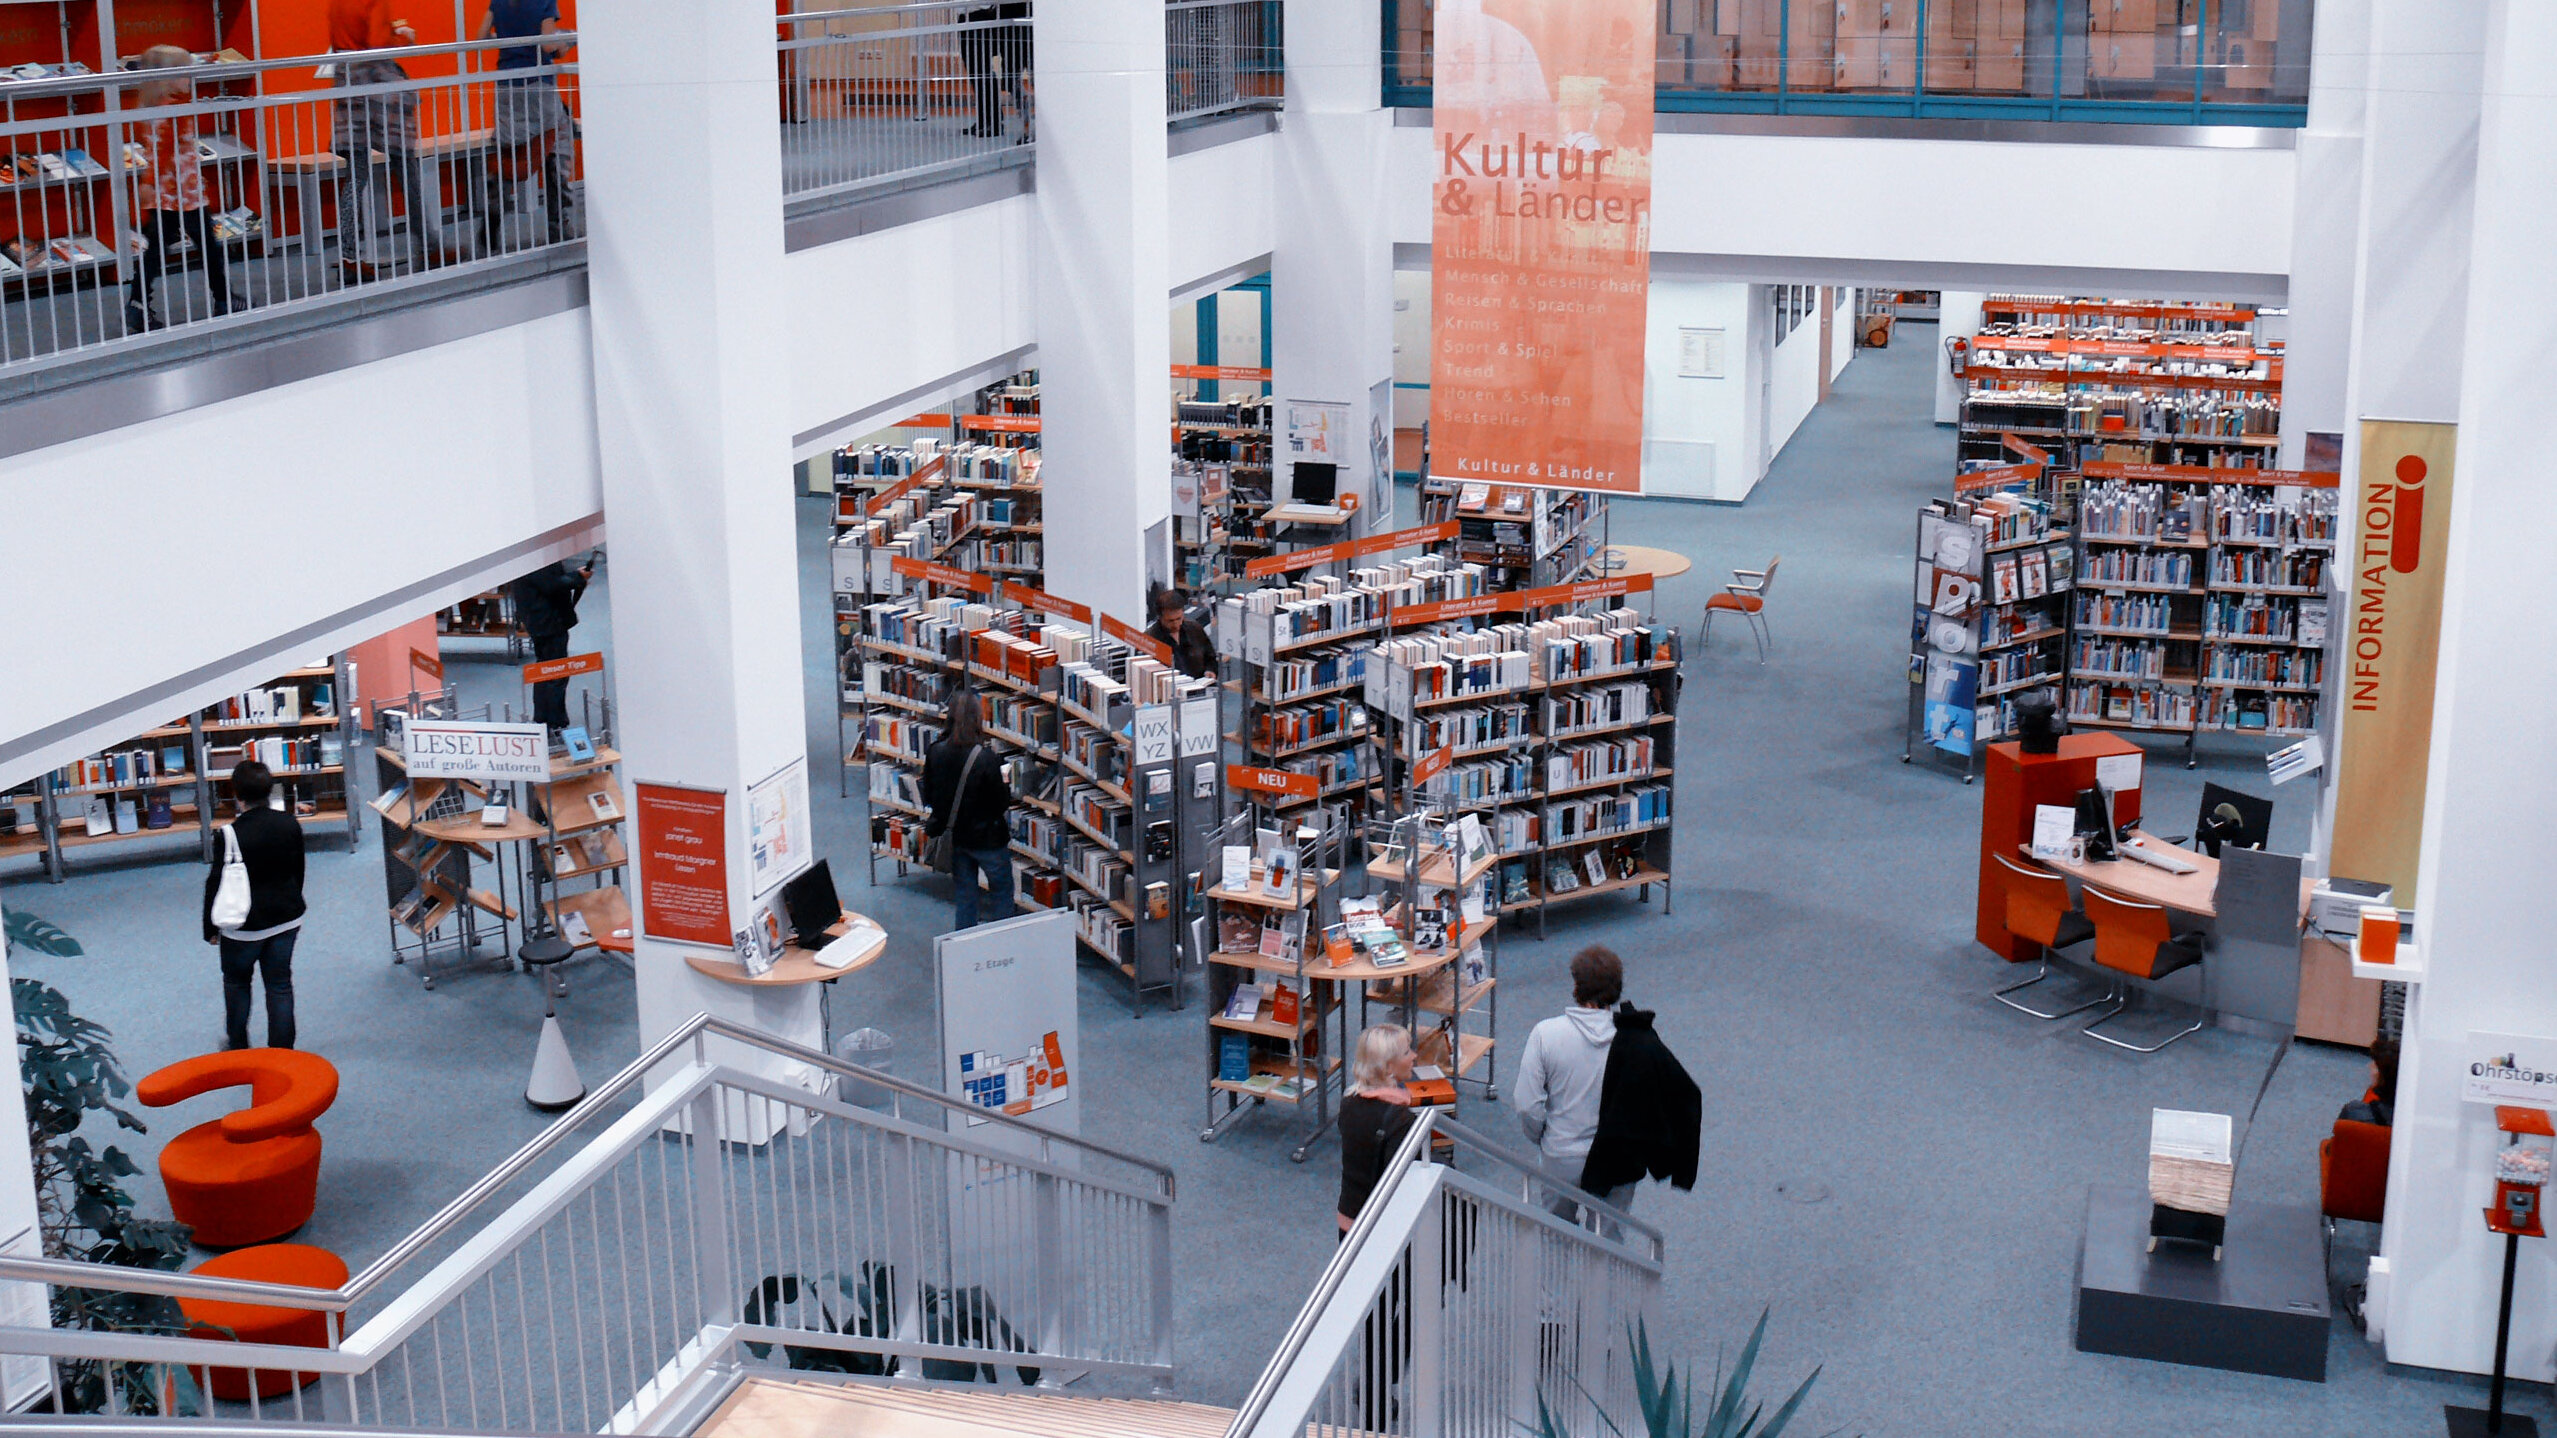 Blick in die Stadtbibliothek